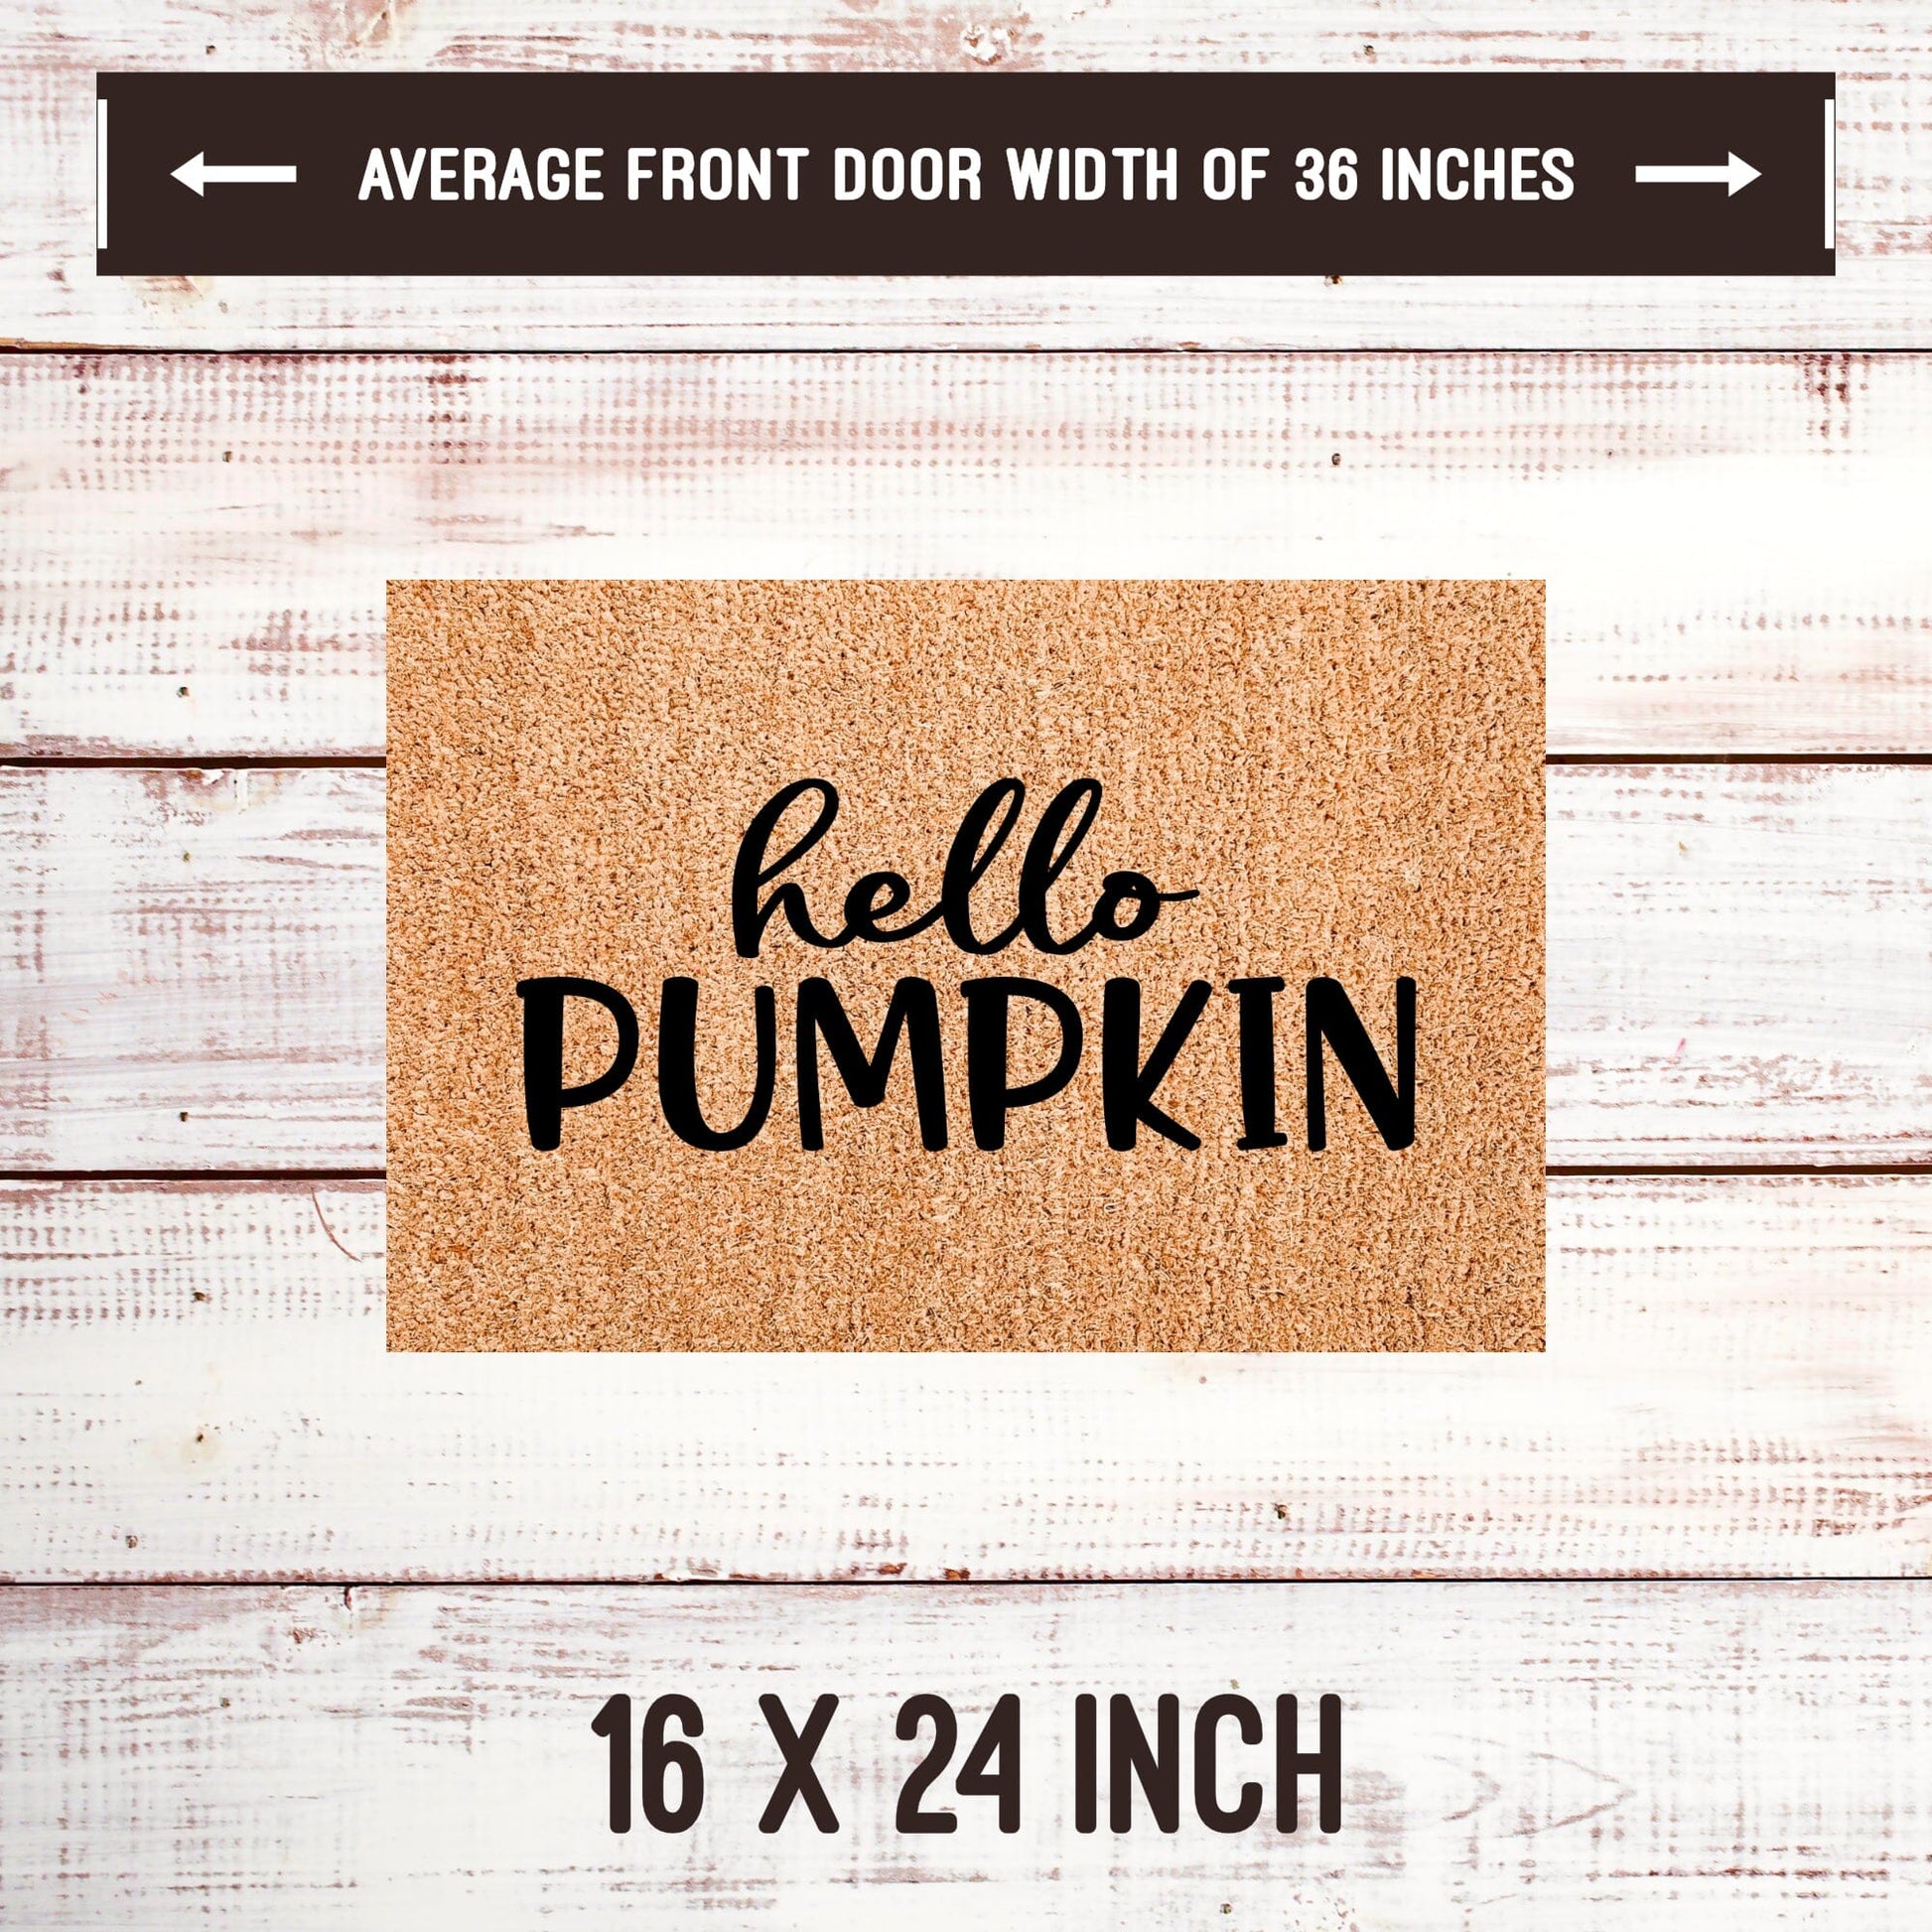 Hello Pumpkin Door Mats teelaunch 16x24 Inches 